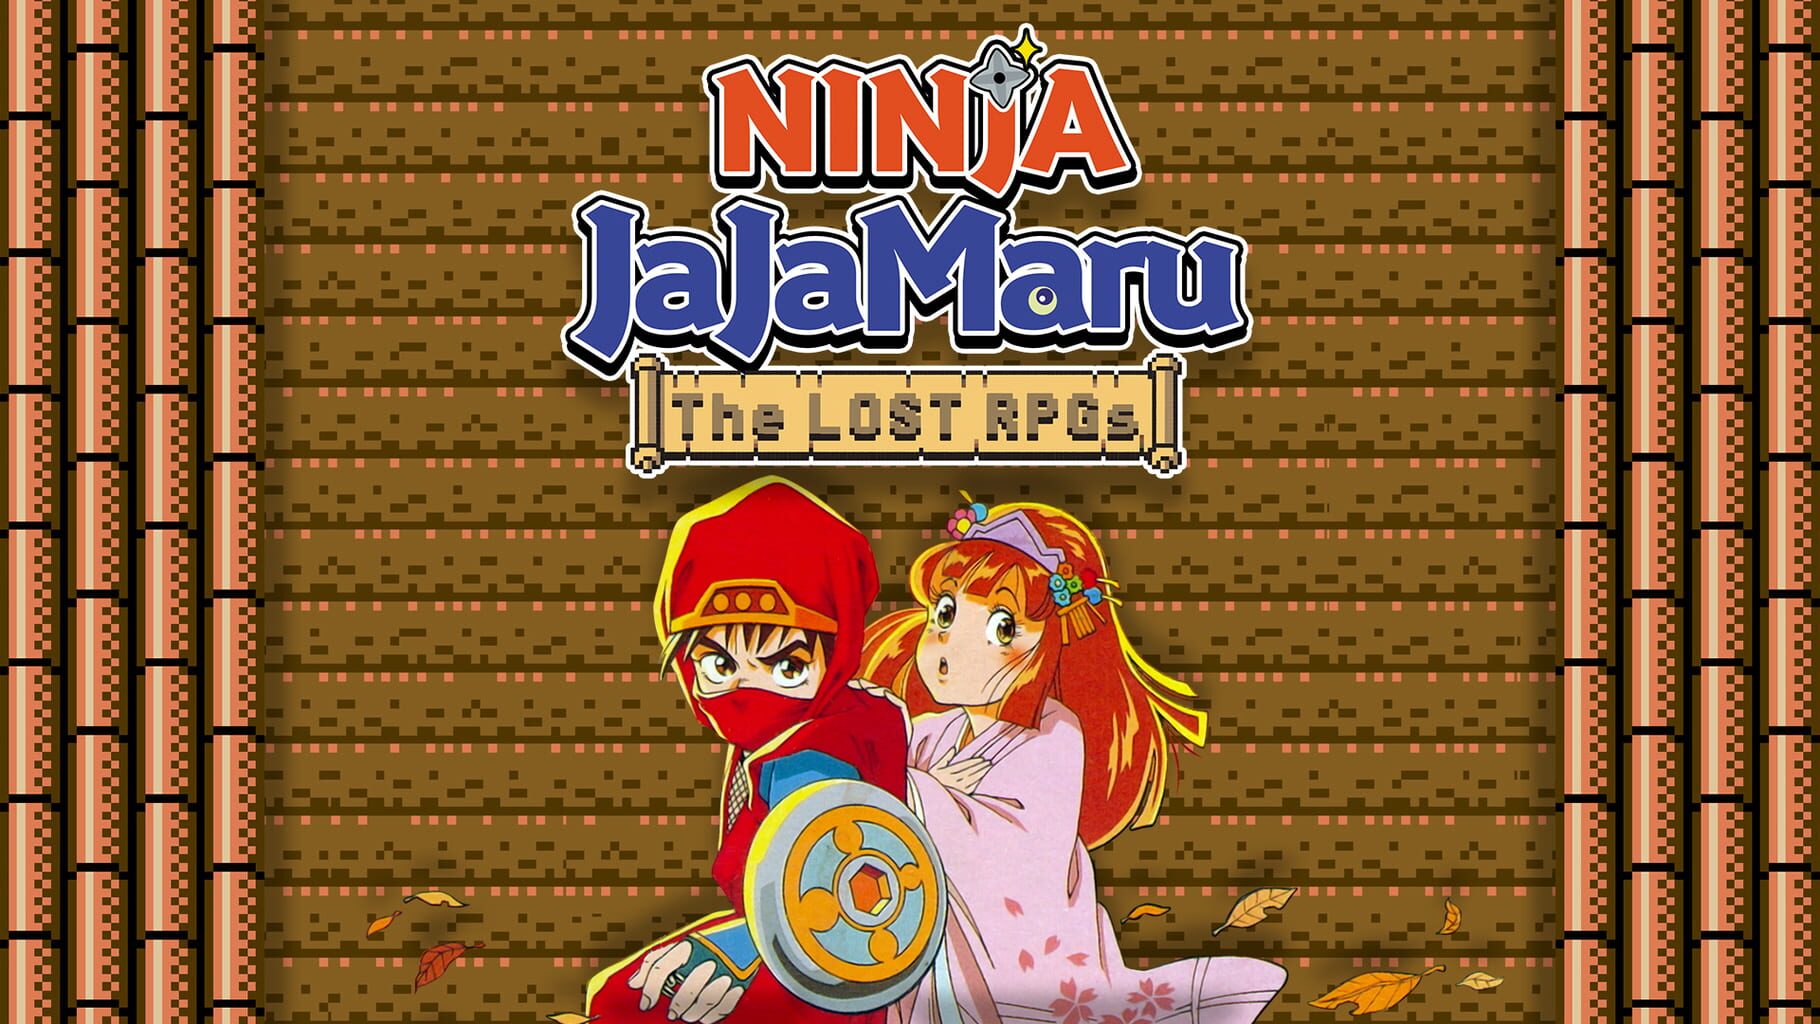 Ninja JaJaMaru: The Lost RPGs artwork